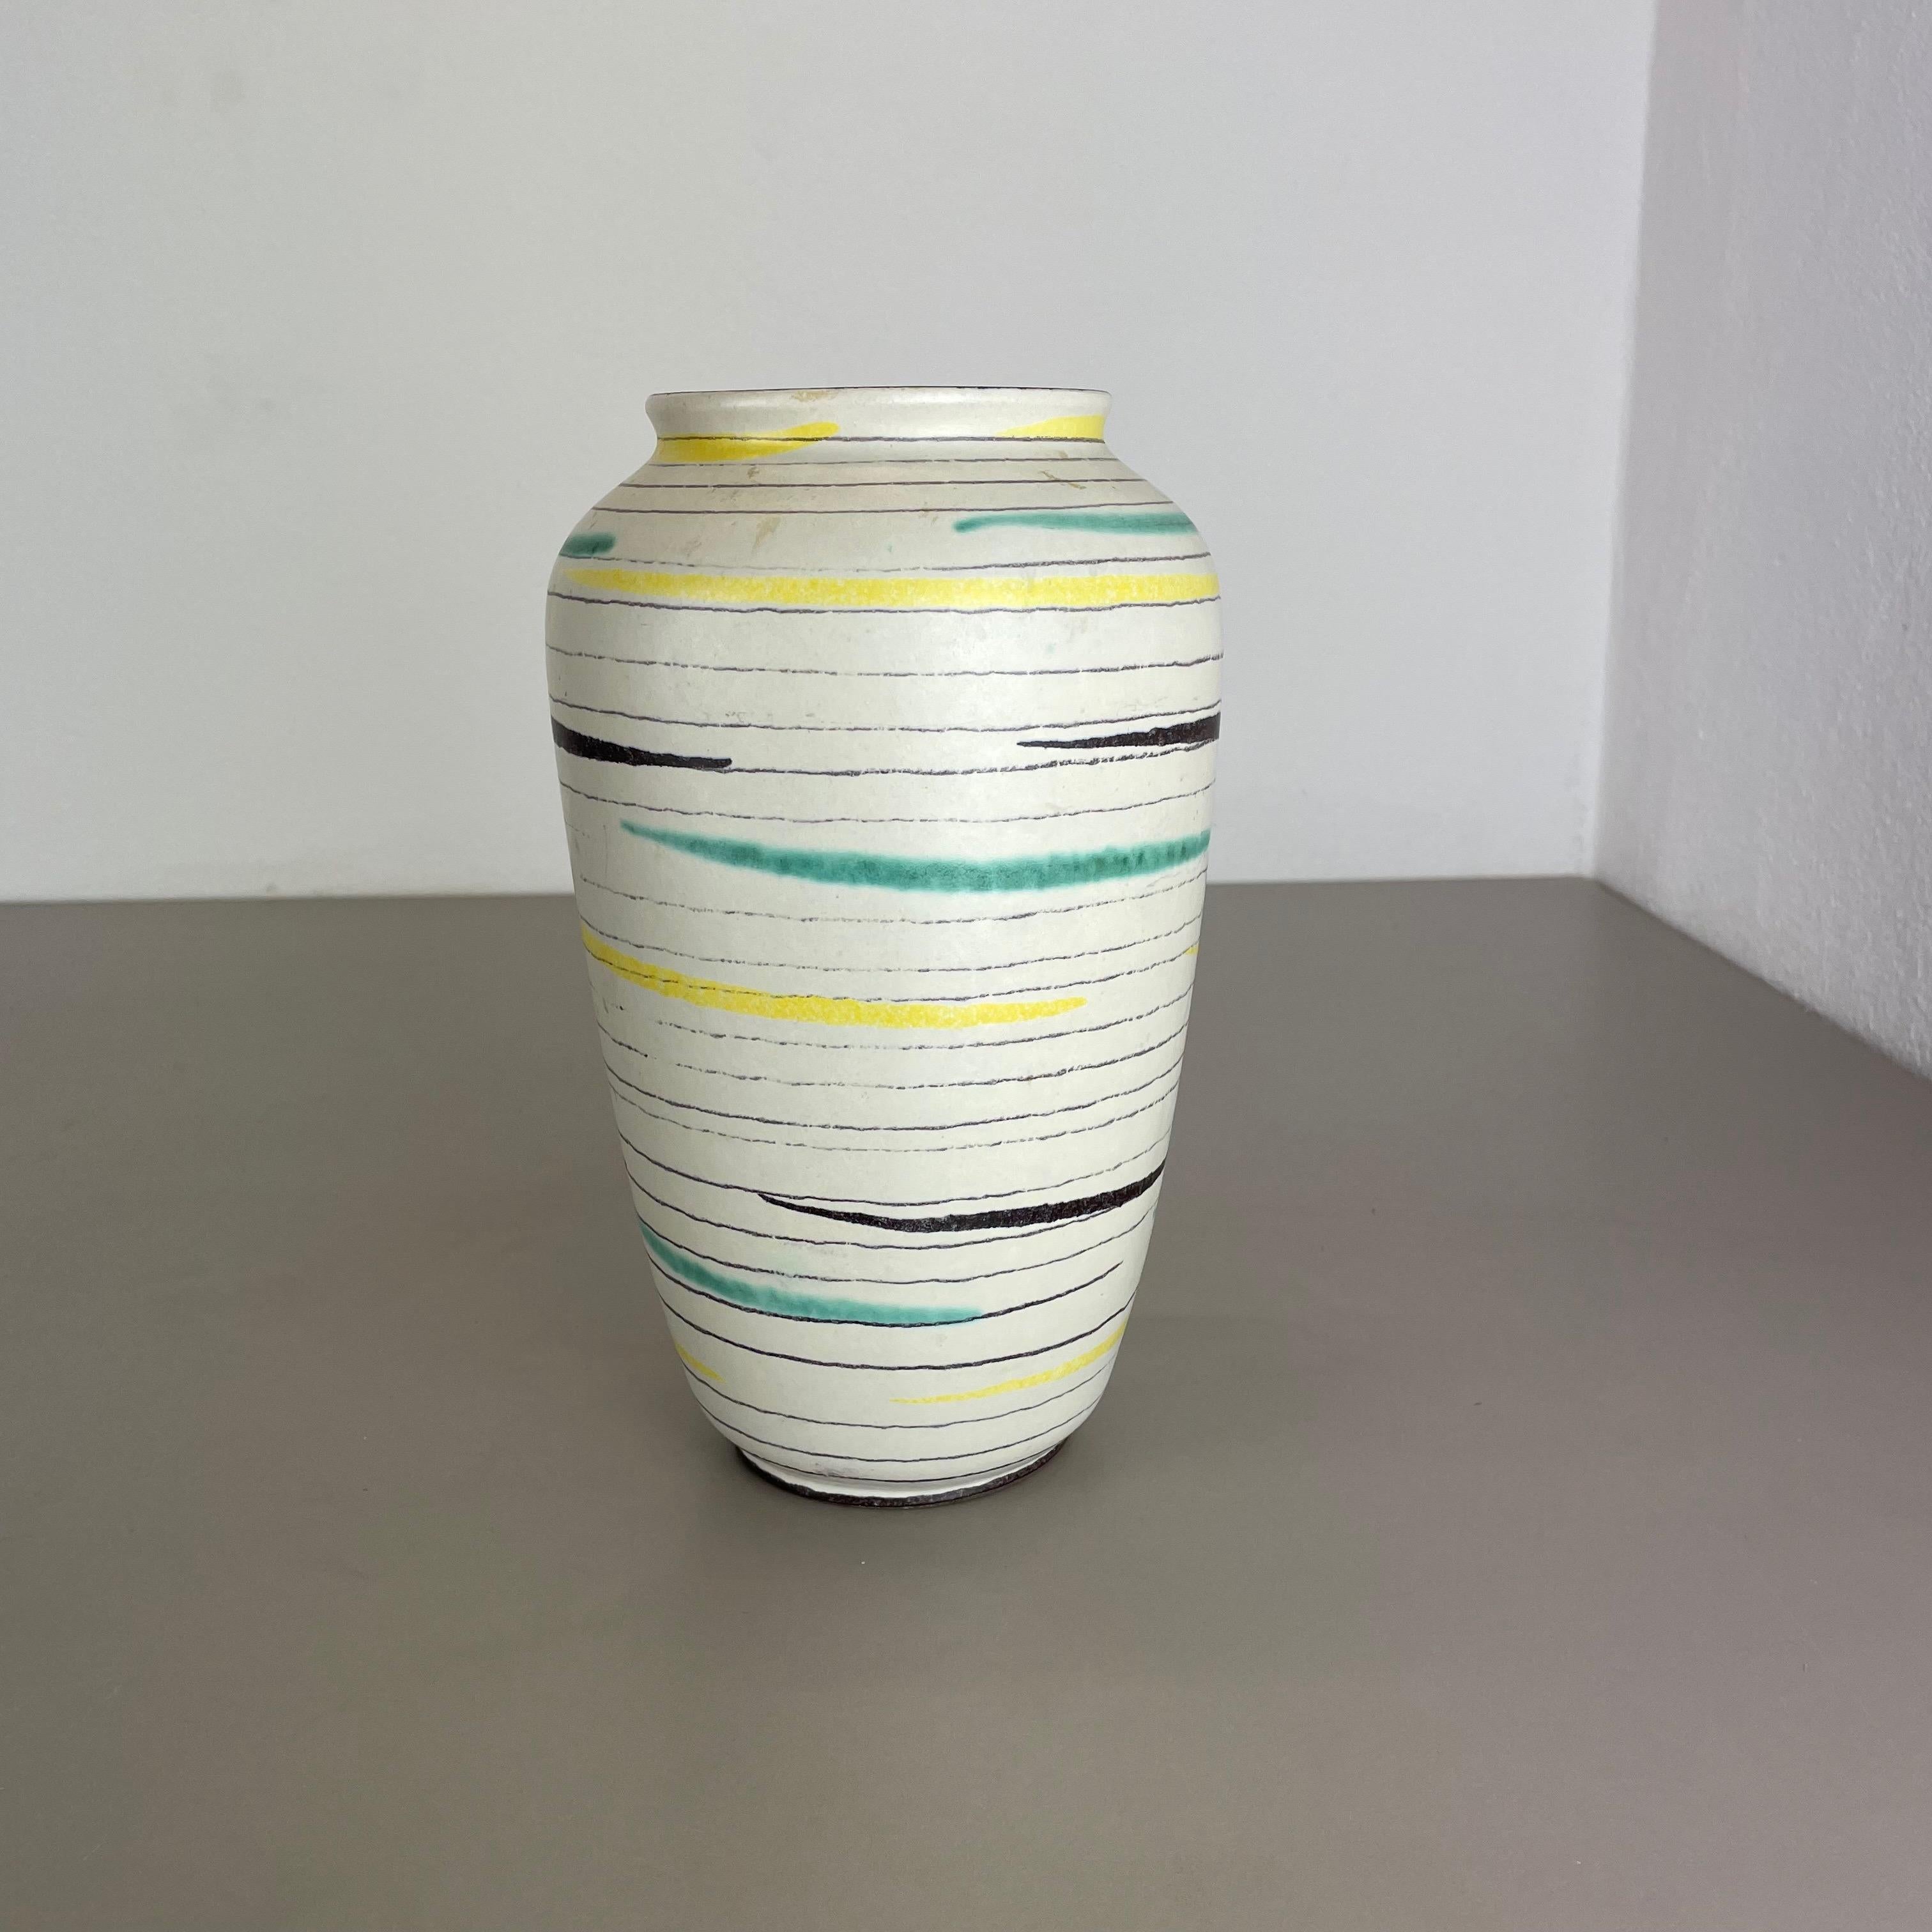 Artikel:

Vase aus Keramik


Produzent:

BAY Ceramic, Deutschland



Jahrzehnt:

1950s




Original Vintage Keramikvase aus den 1970er Jahren, hergestellt in Deutschland. Hochwertige deutsche Produktion mit schöner abstrakter Malerei und super